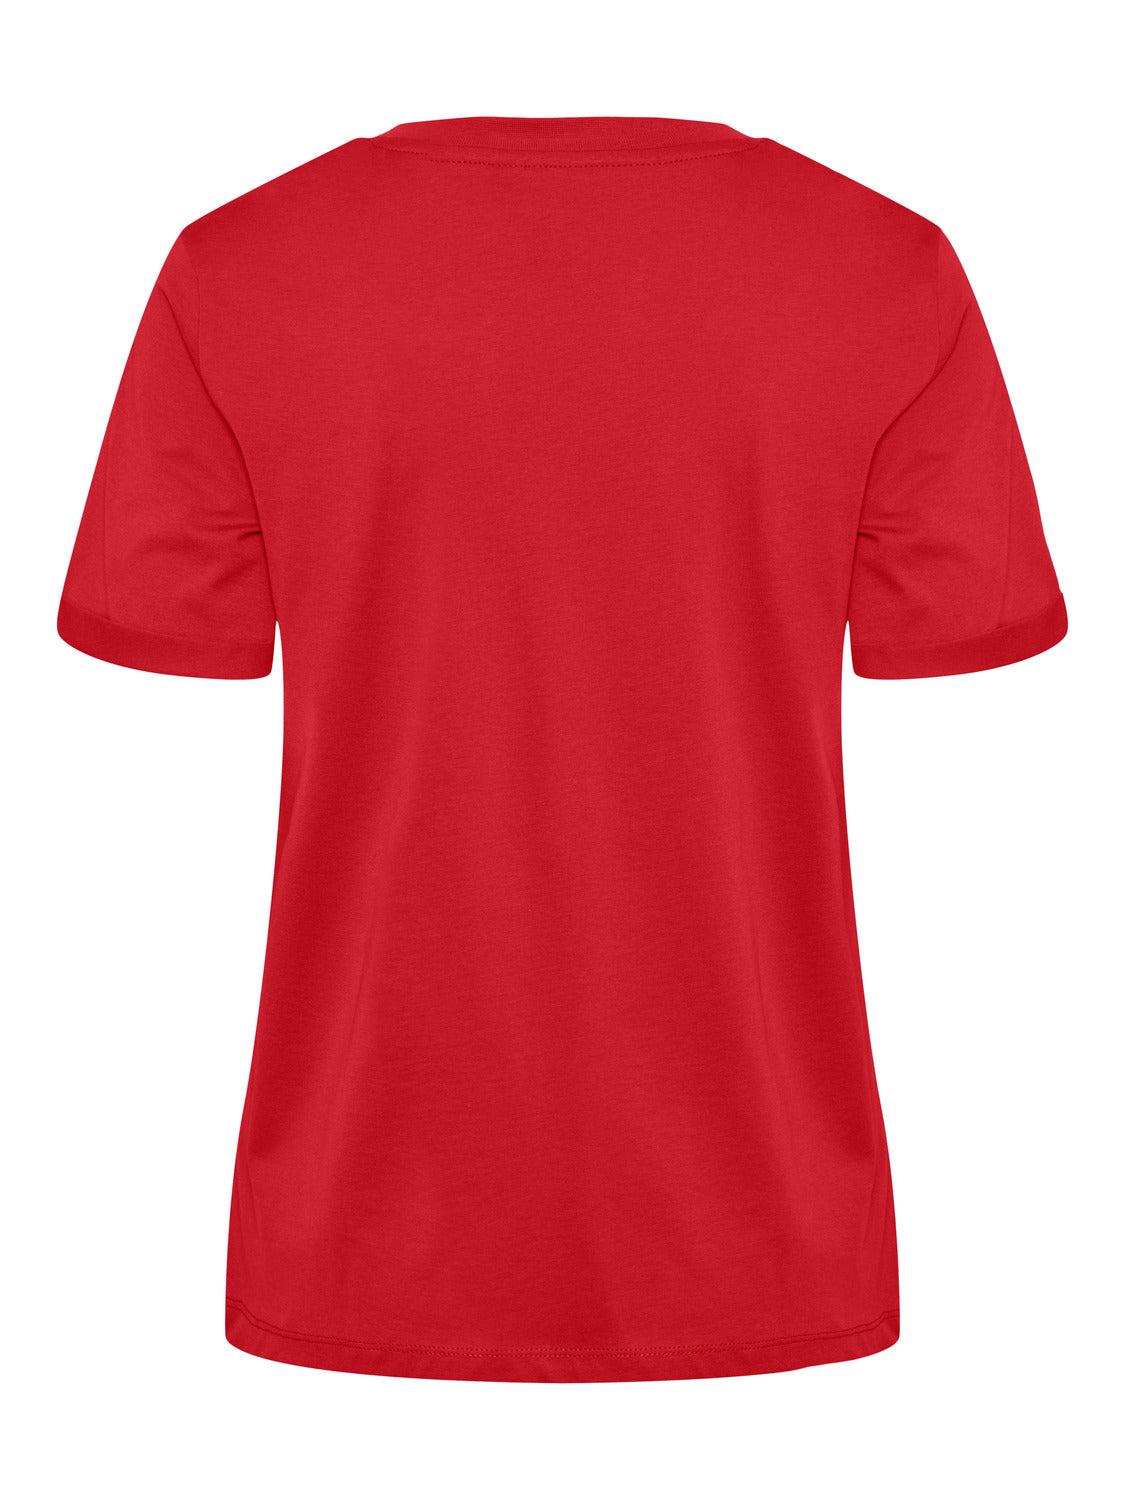 PCRIA T-Shirt - High Risk Red